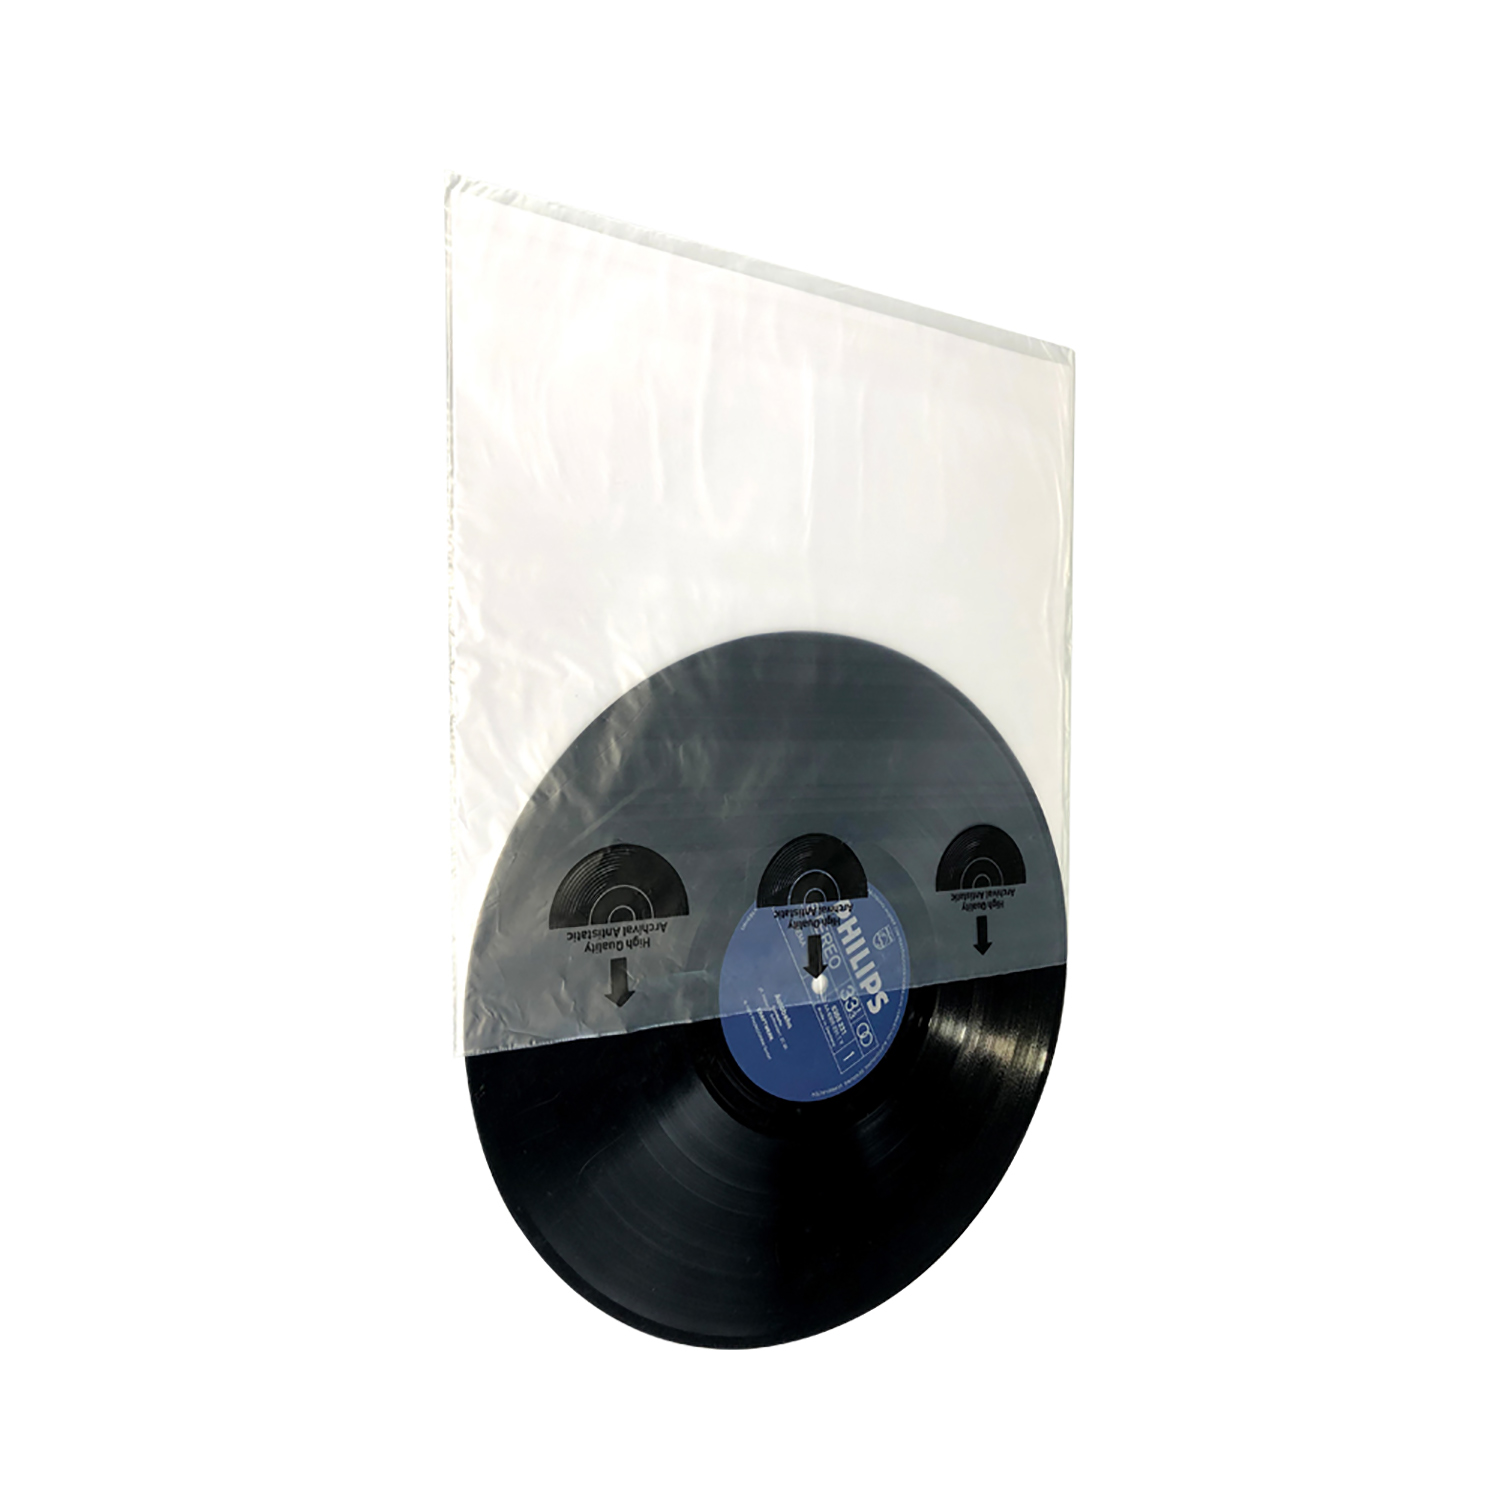 High Innenhülle Schallplatten Quality 7EVEN & Schallplatten LP-Innenhülle HDPE Reispapier